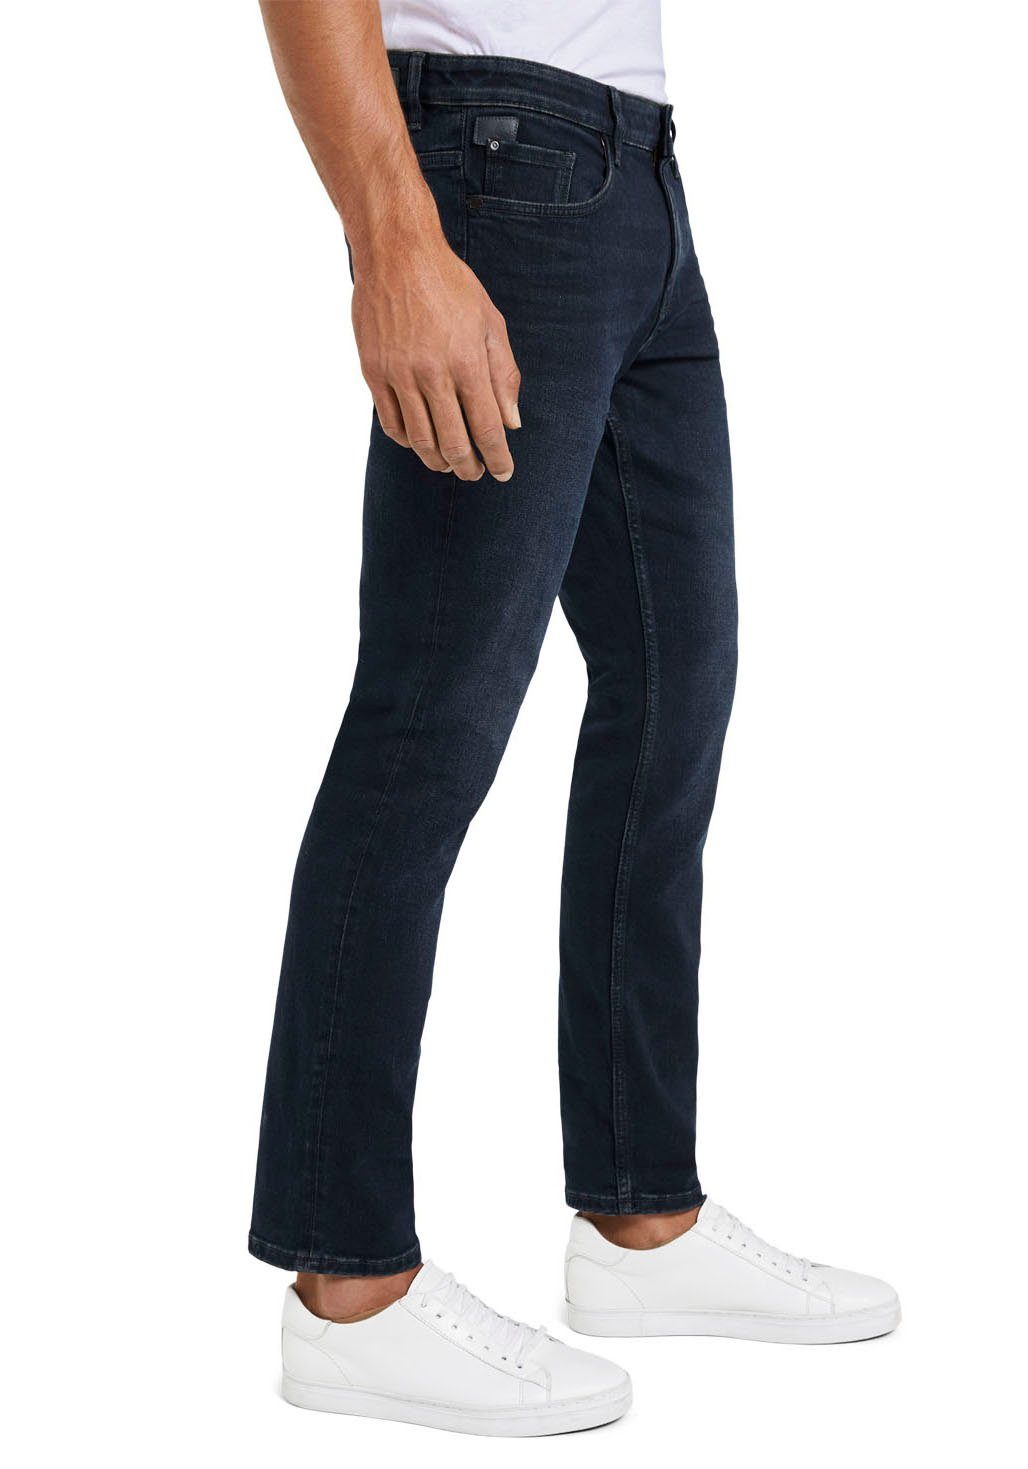 Josh Reißverschluss blue TAILOR black mit dark stone 5-Pocket-Jeans TOM